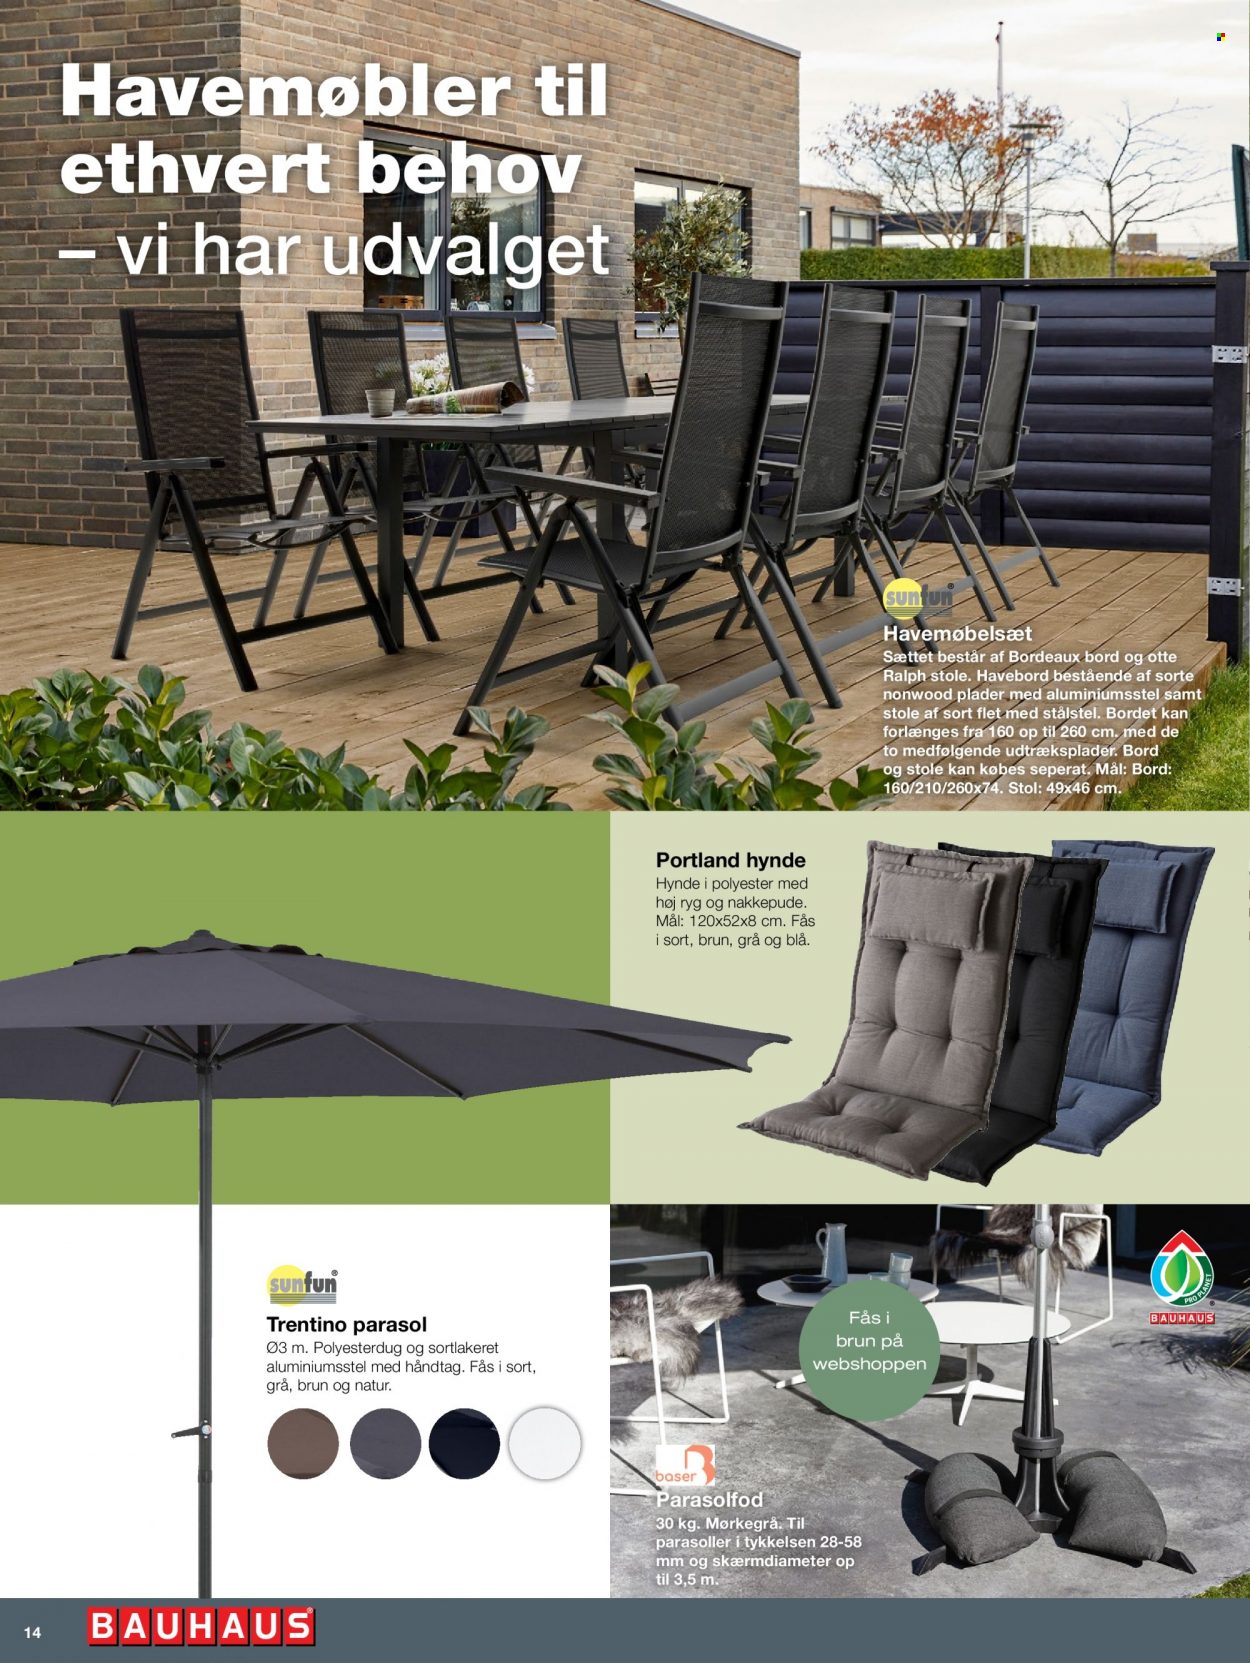 Bauhaus tilbud  - tilbudsprodukter - havemøbler, havemøbel, stol, parasol, parasolfod. Side 14.